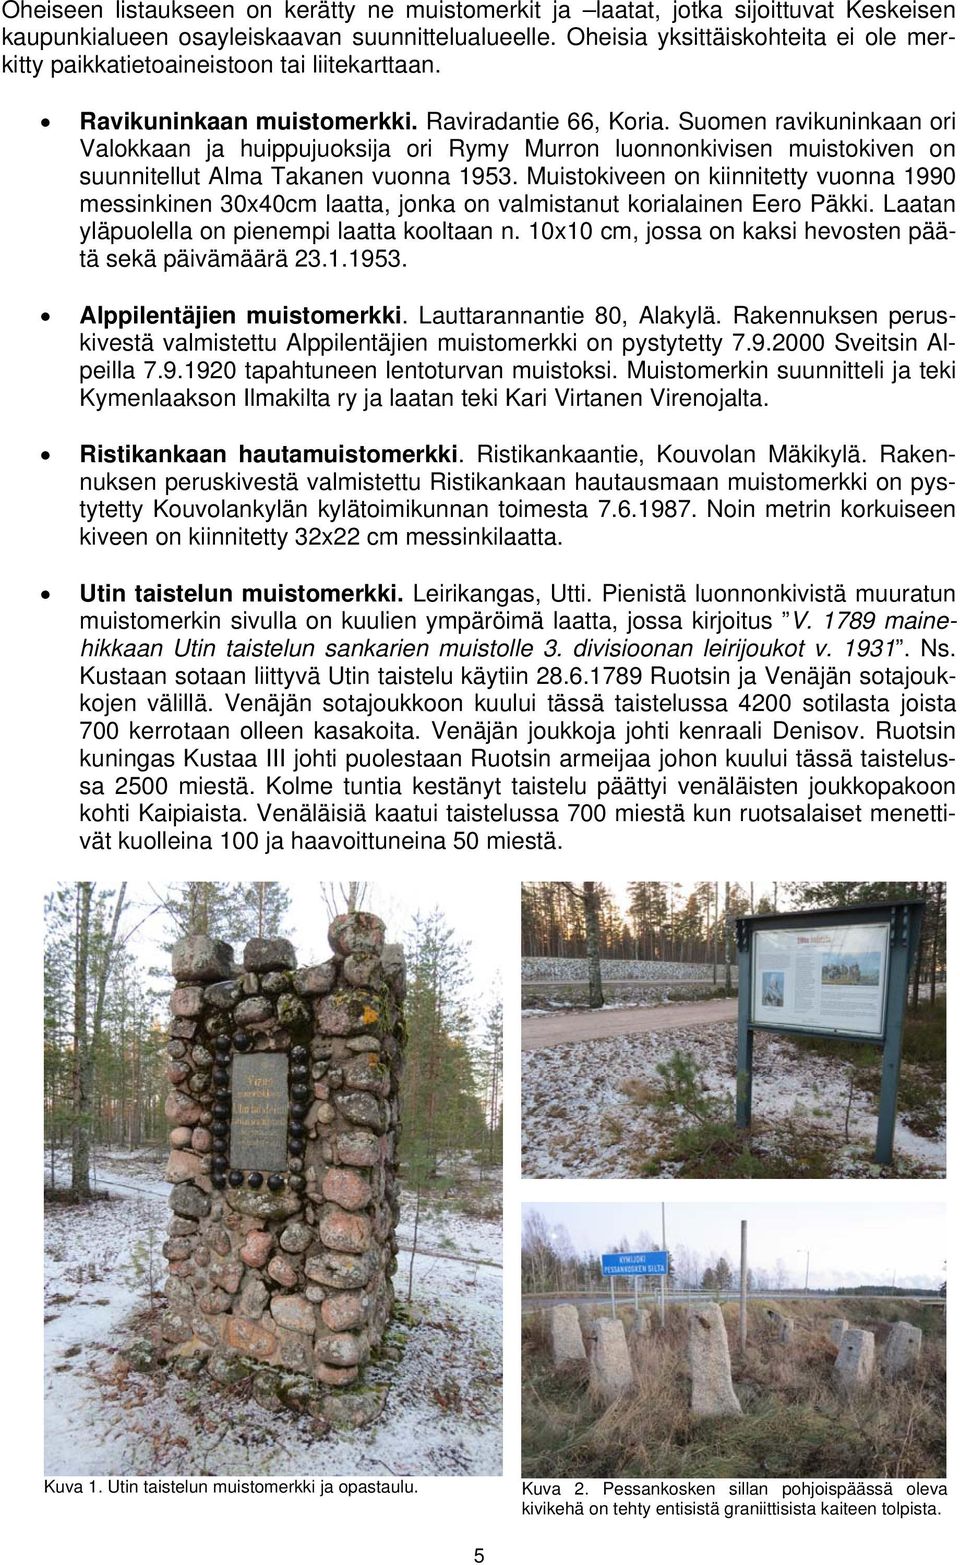 Suomen ravikuninkaan ori Valokkaan ja huippujuoksija ori Rymy Murron luonnonkivisen muistokiven on suunnitellut Alma Takanen vuonna 1953.